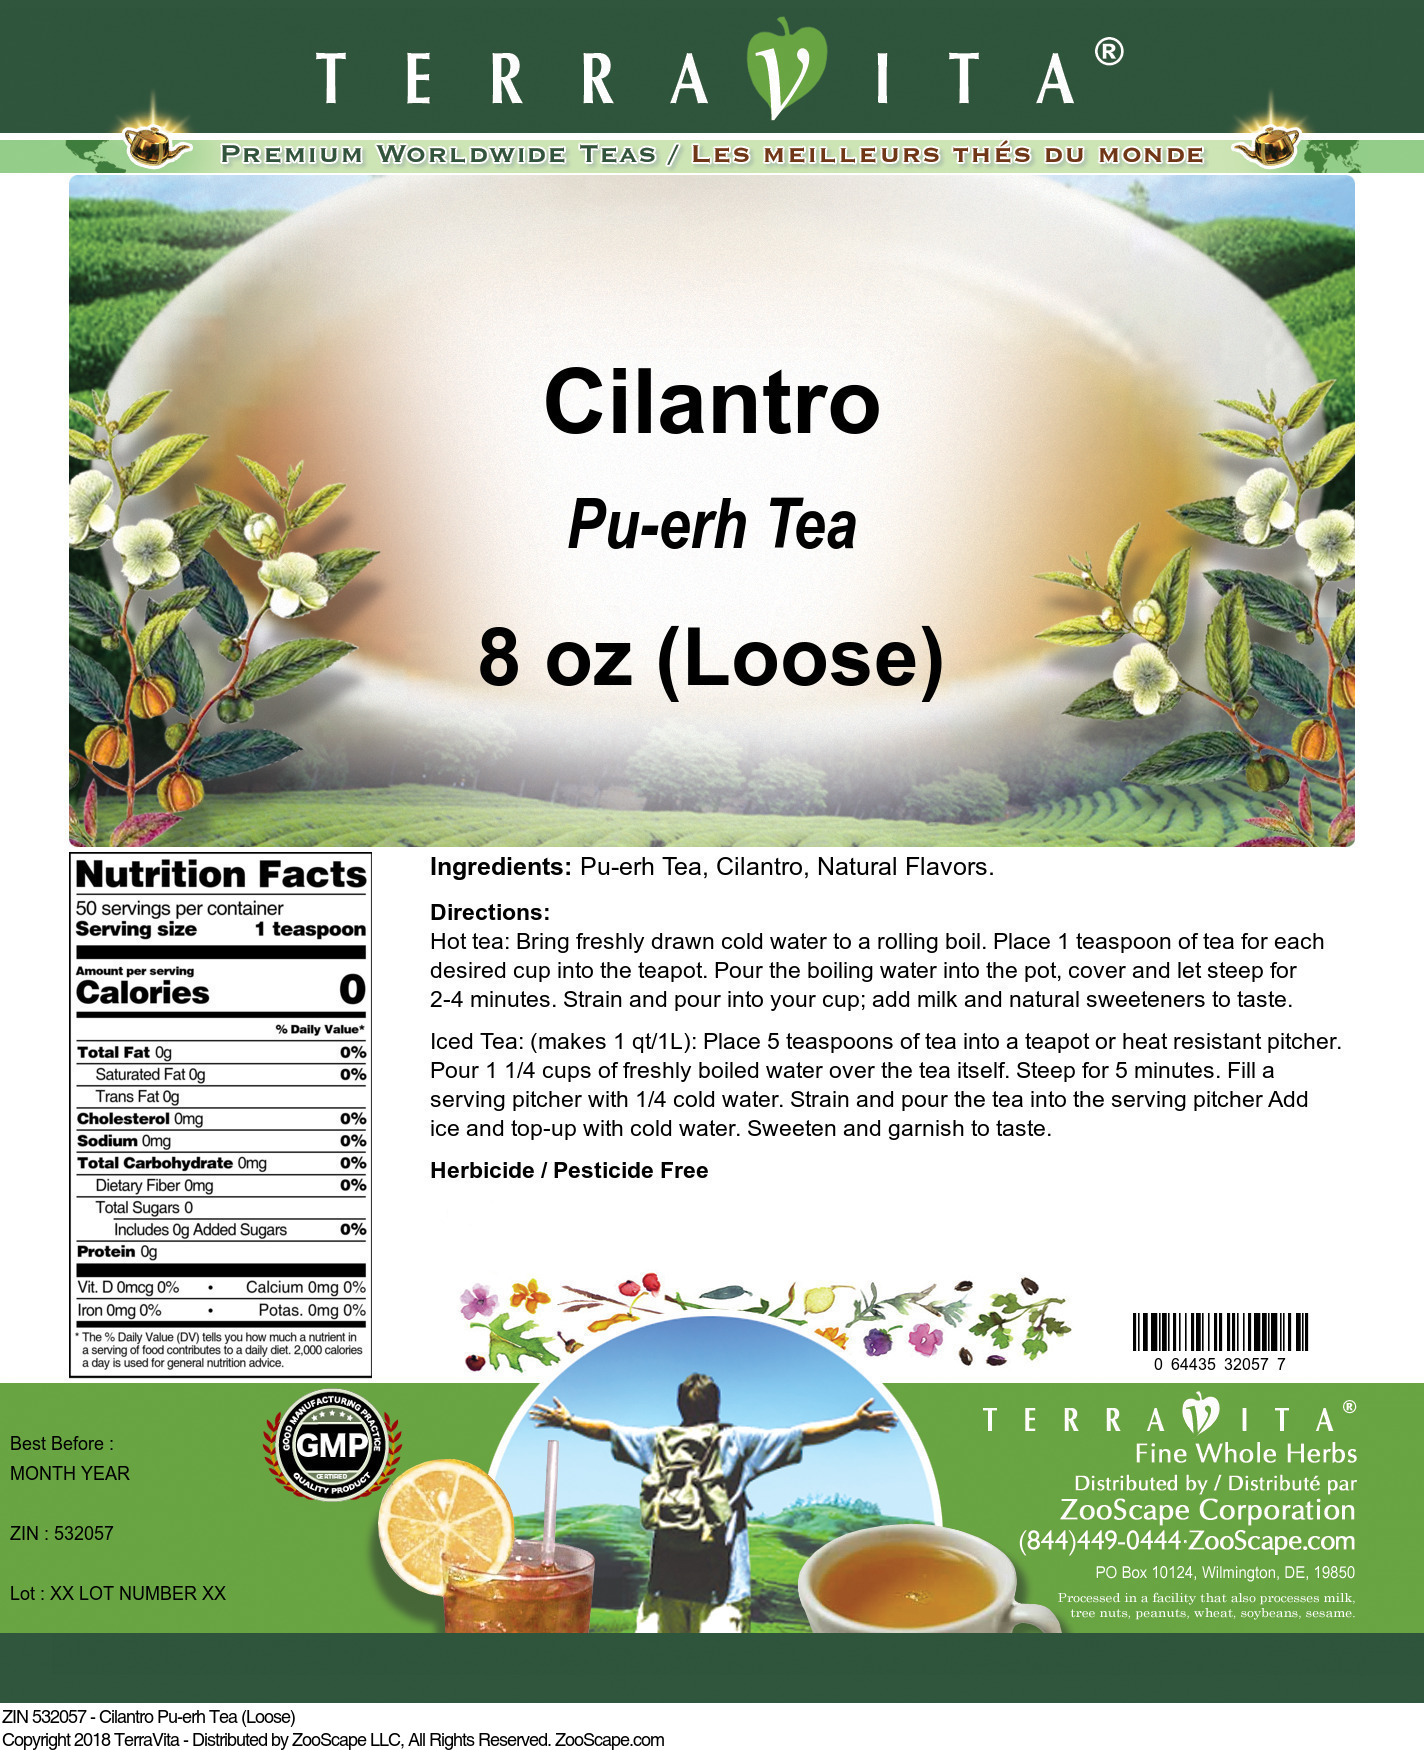 Cilantro Pu-erh Tea (Loose) - Label